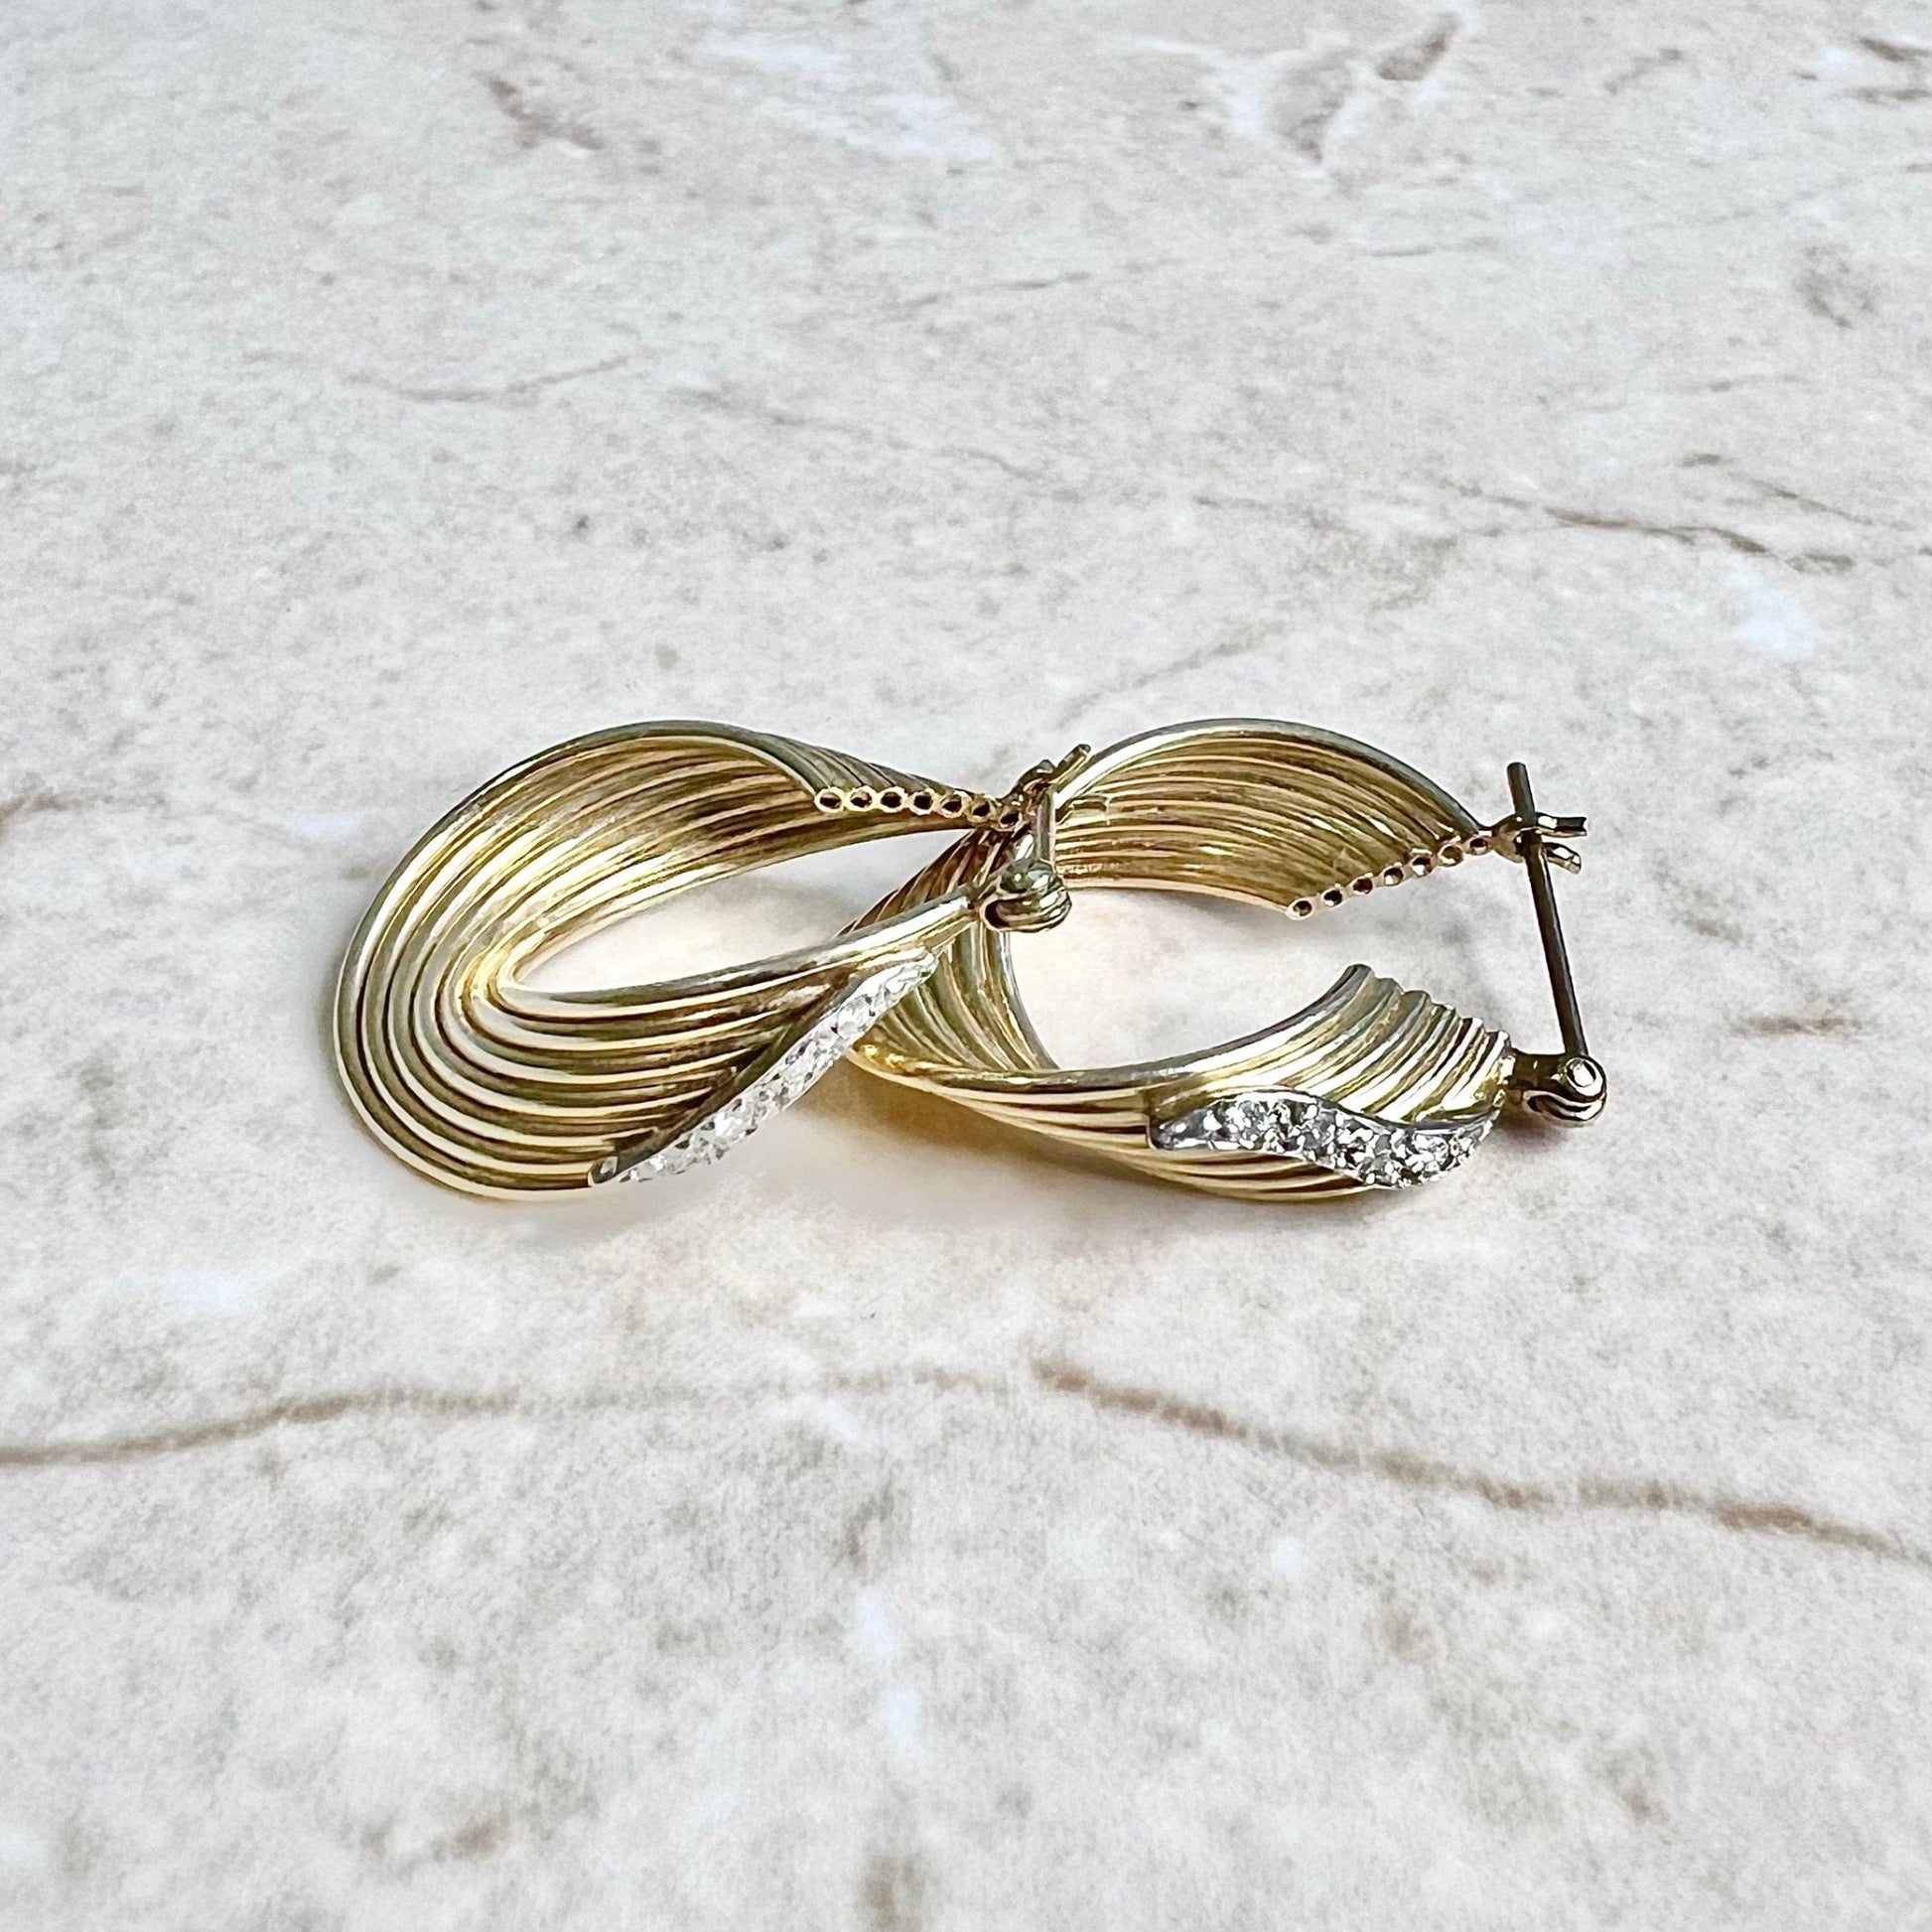 Vintage 14K Diamond Hoop Earrings - Two Tone Gold Diamond Hoops - 14 Karat Gold Diamond Earrings - Vintage Earrings - Yellow Gold Earrings